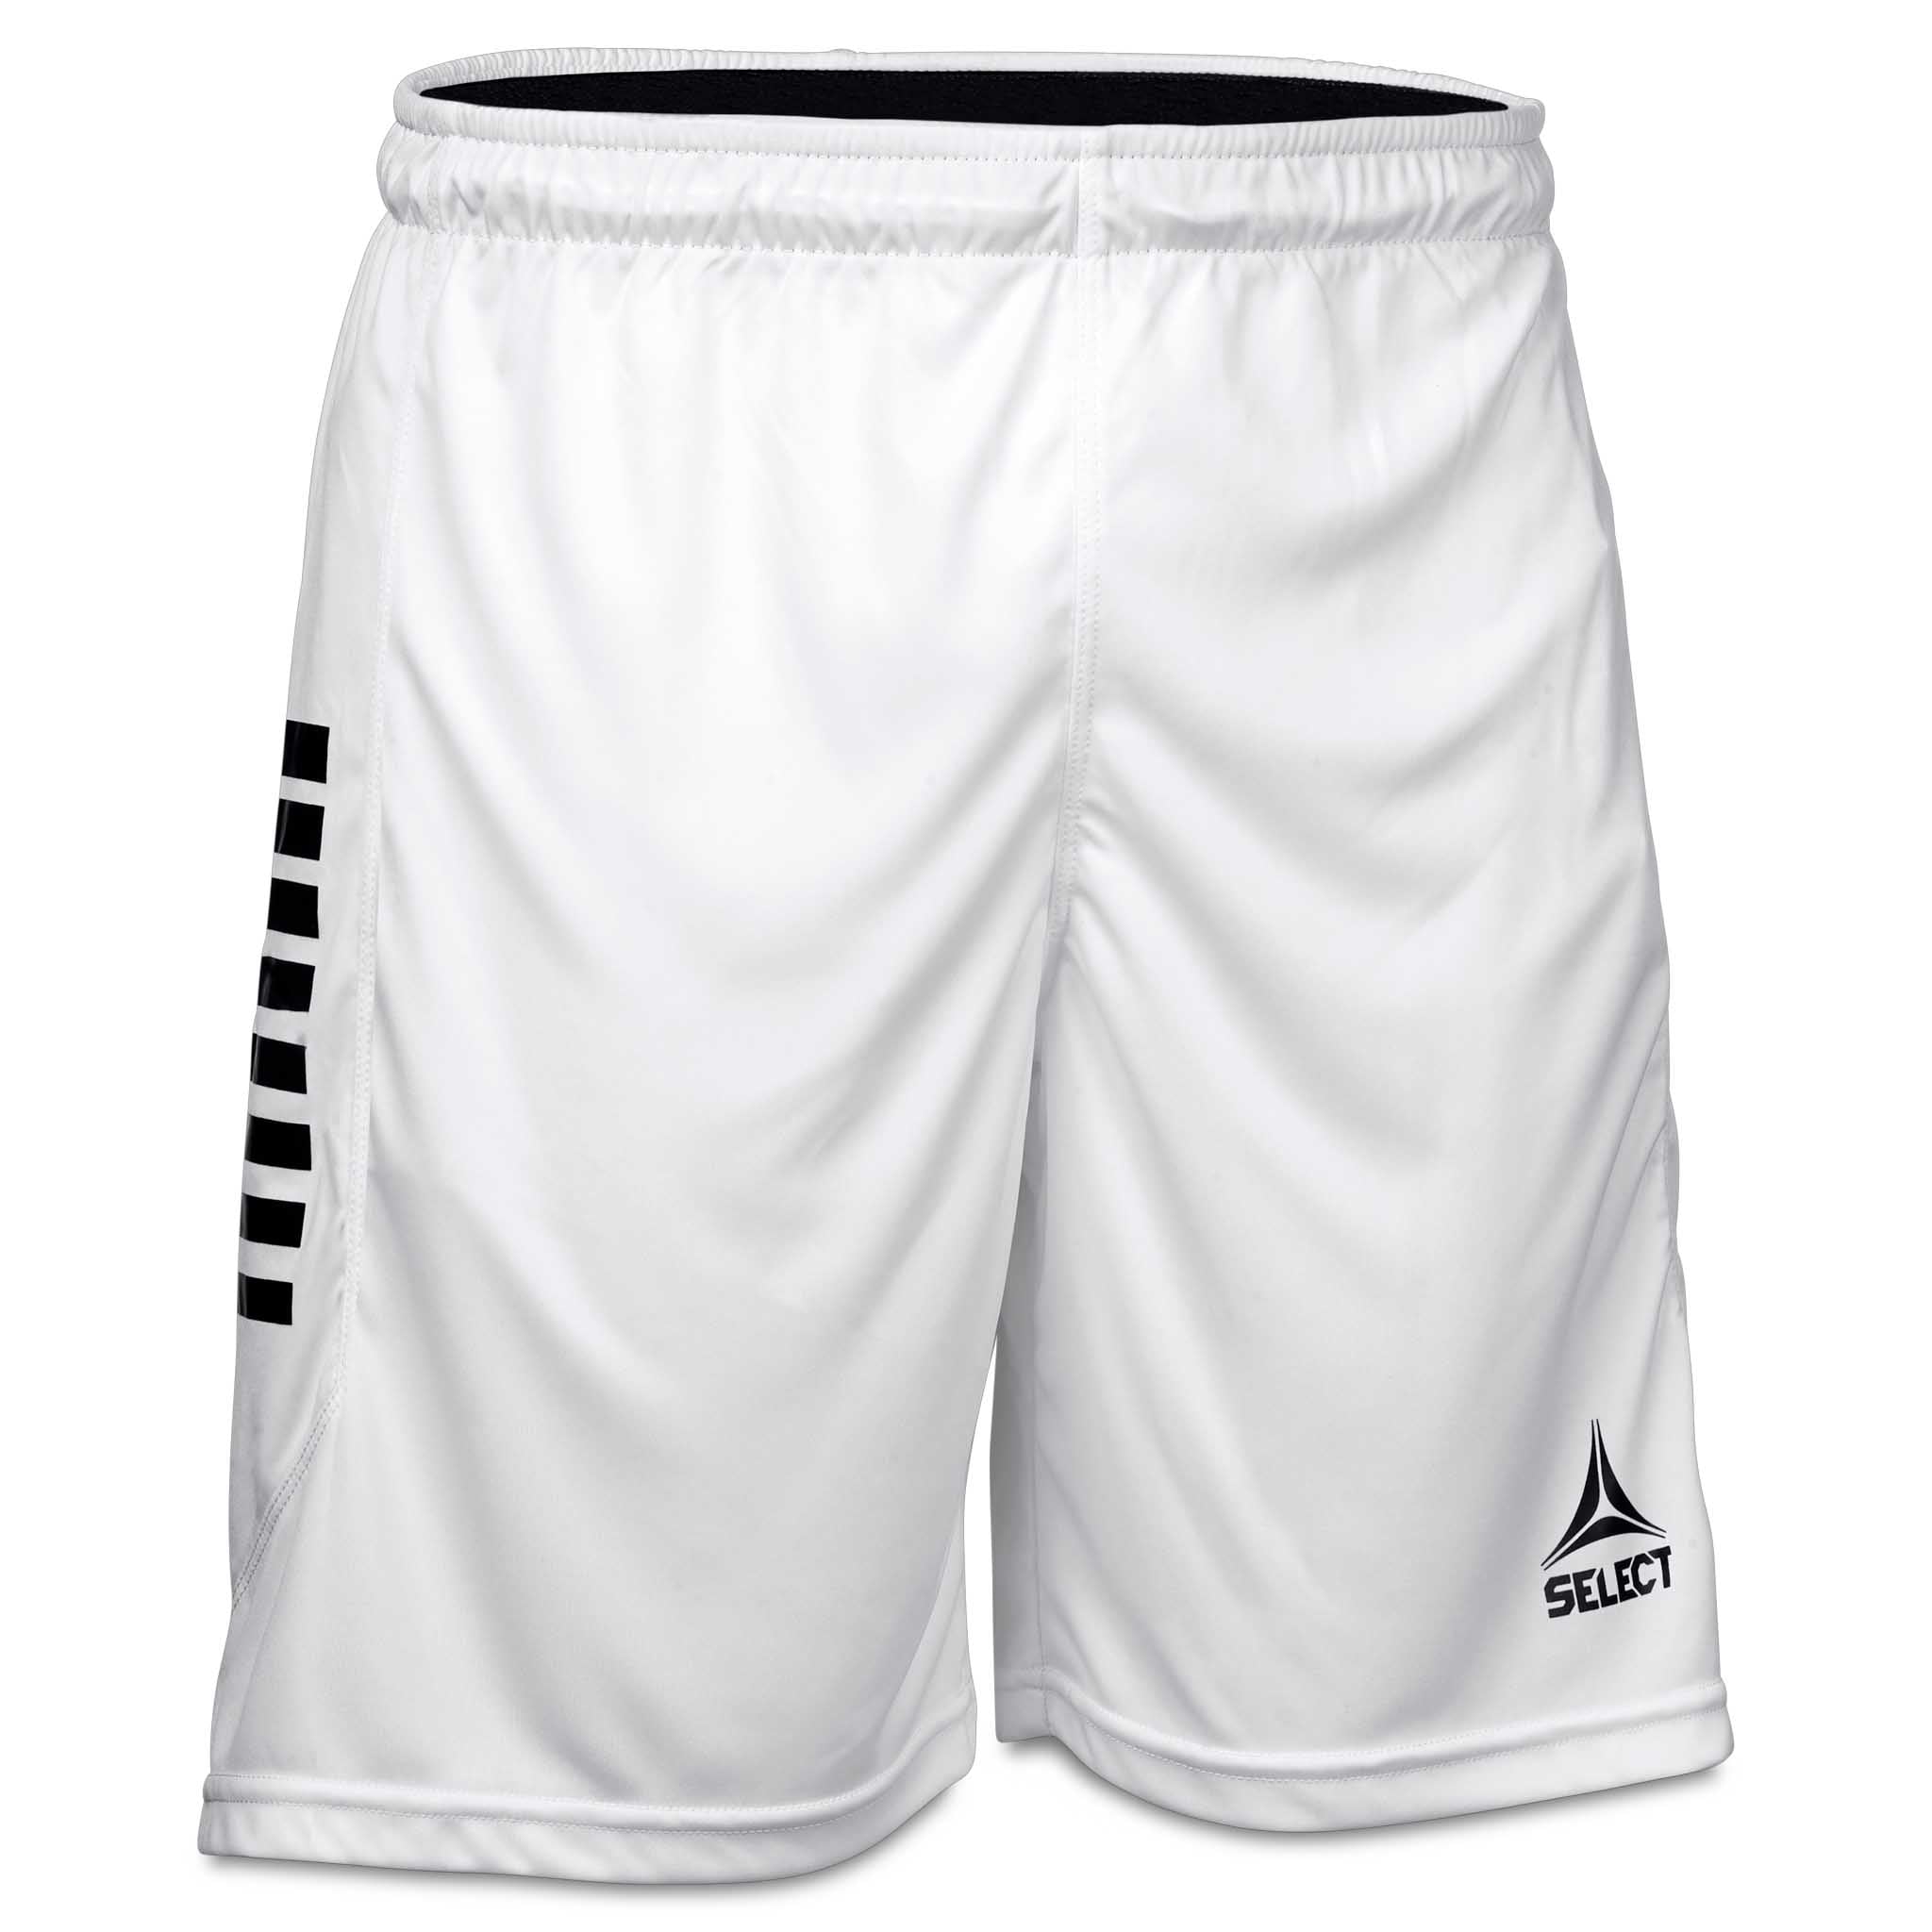 Monaco shorts #farve_hvid/sort